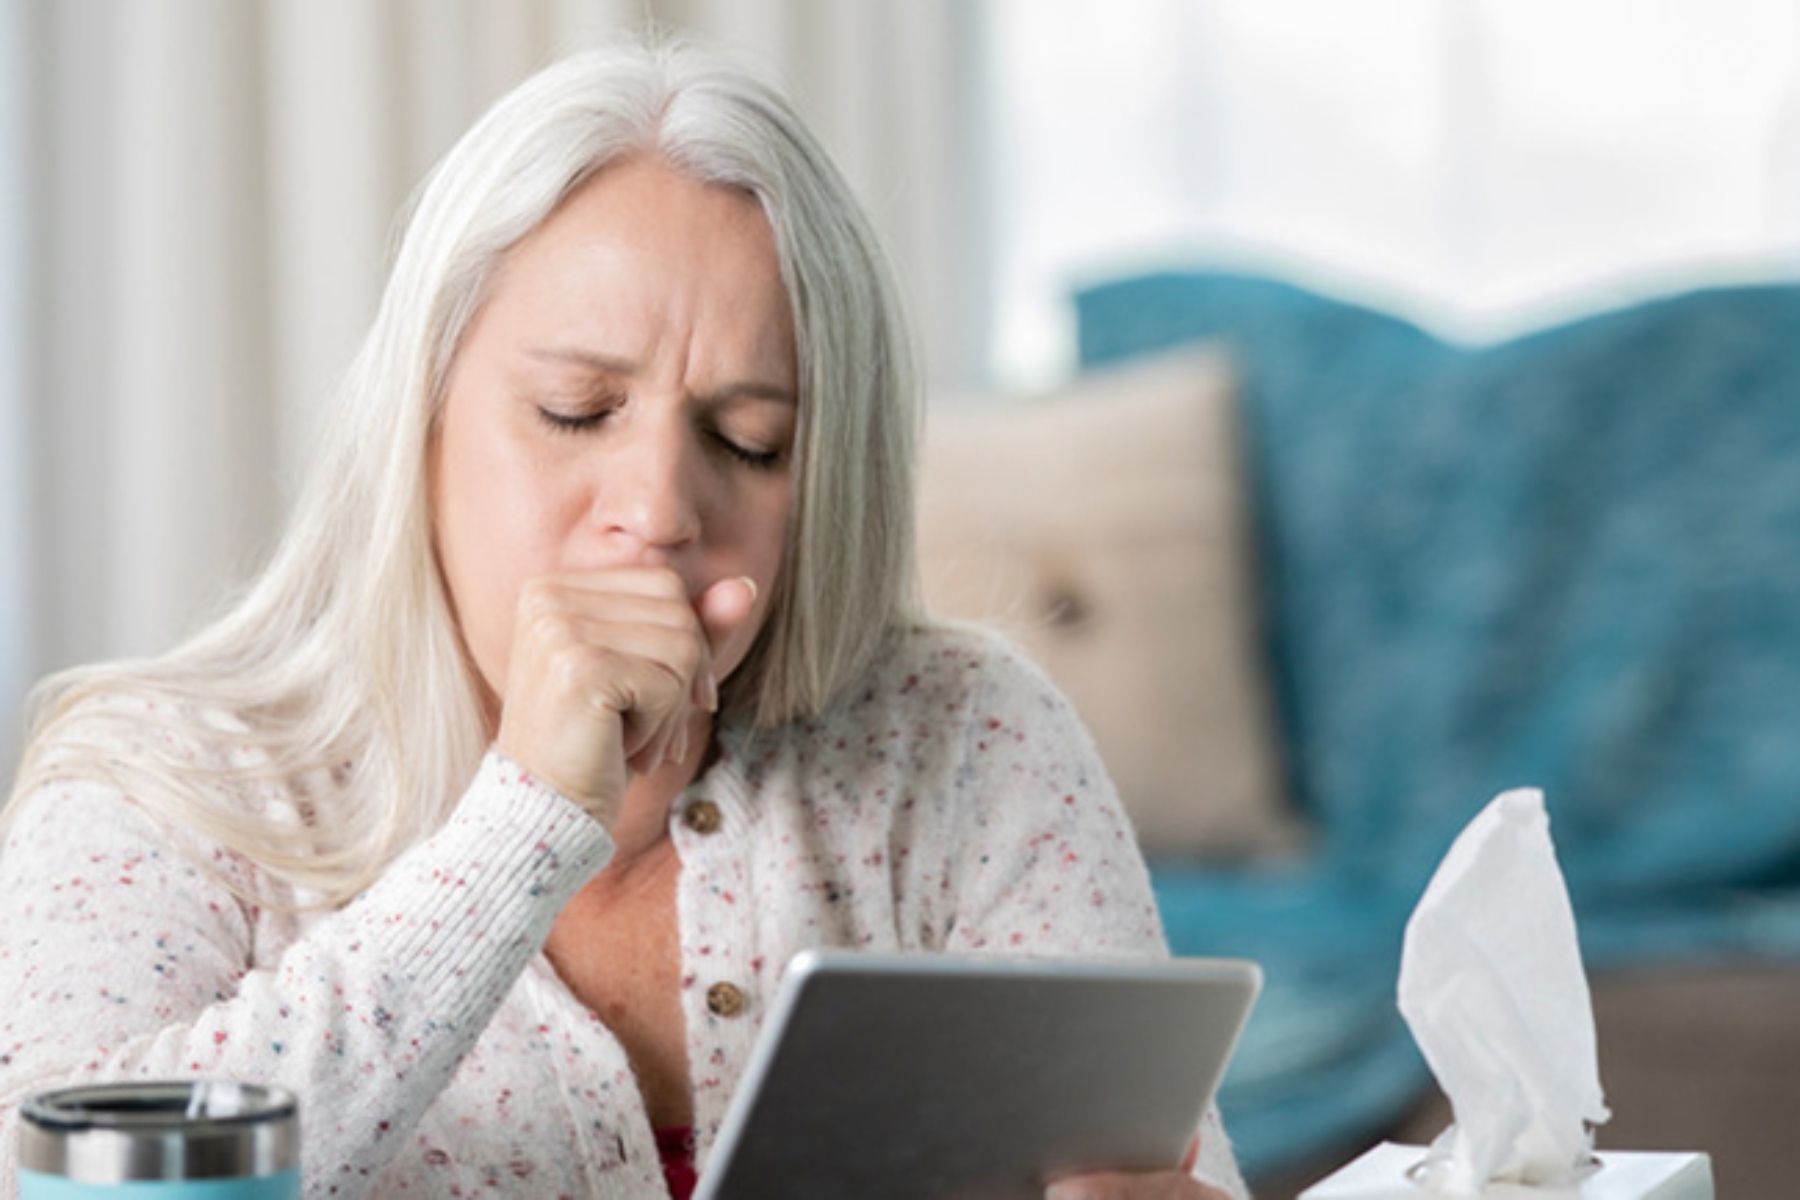 Μυκόπλασμα: Γιατί προκαλεί ανησυχία το μυκόπλασμα της πνευμονίας;